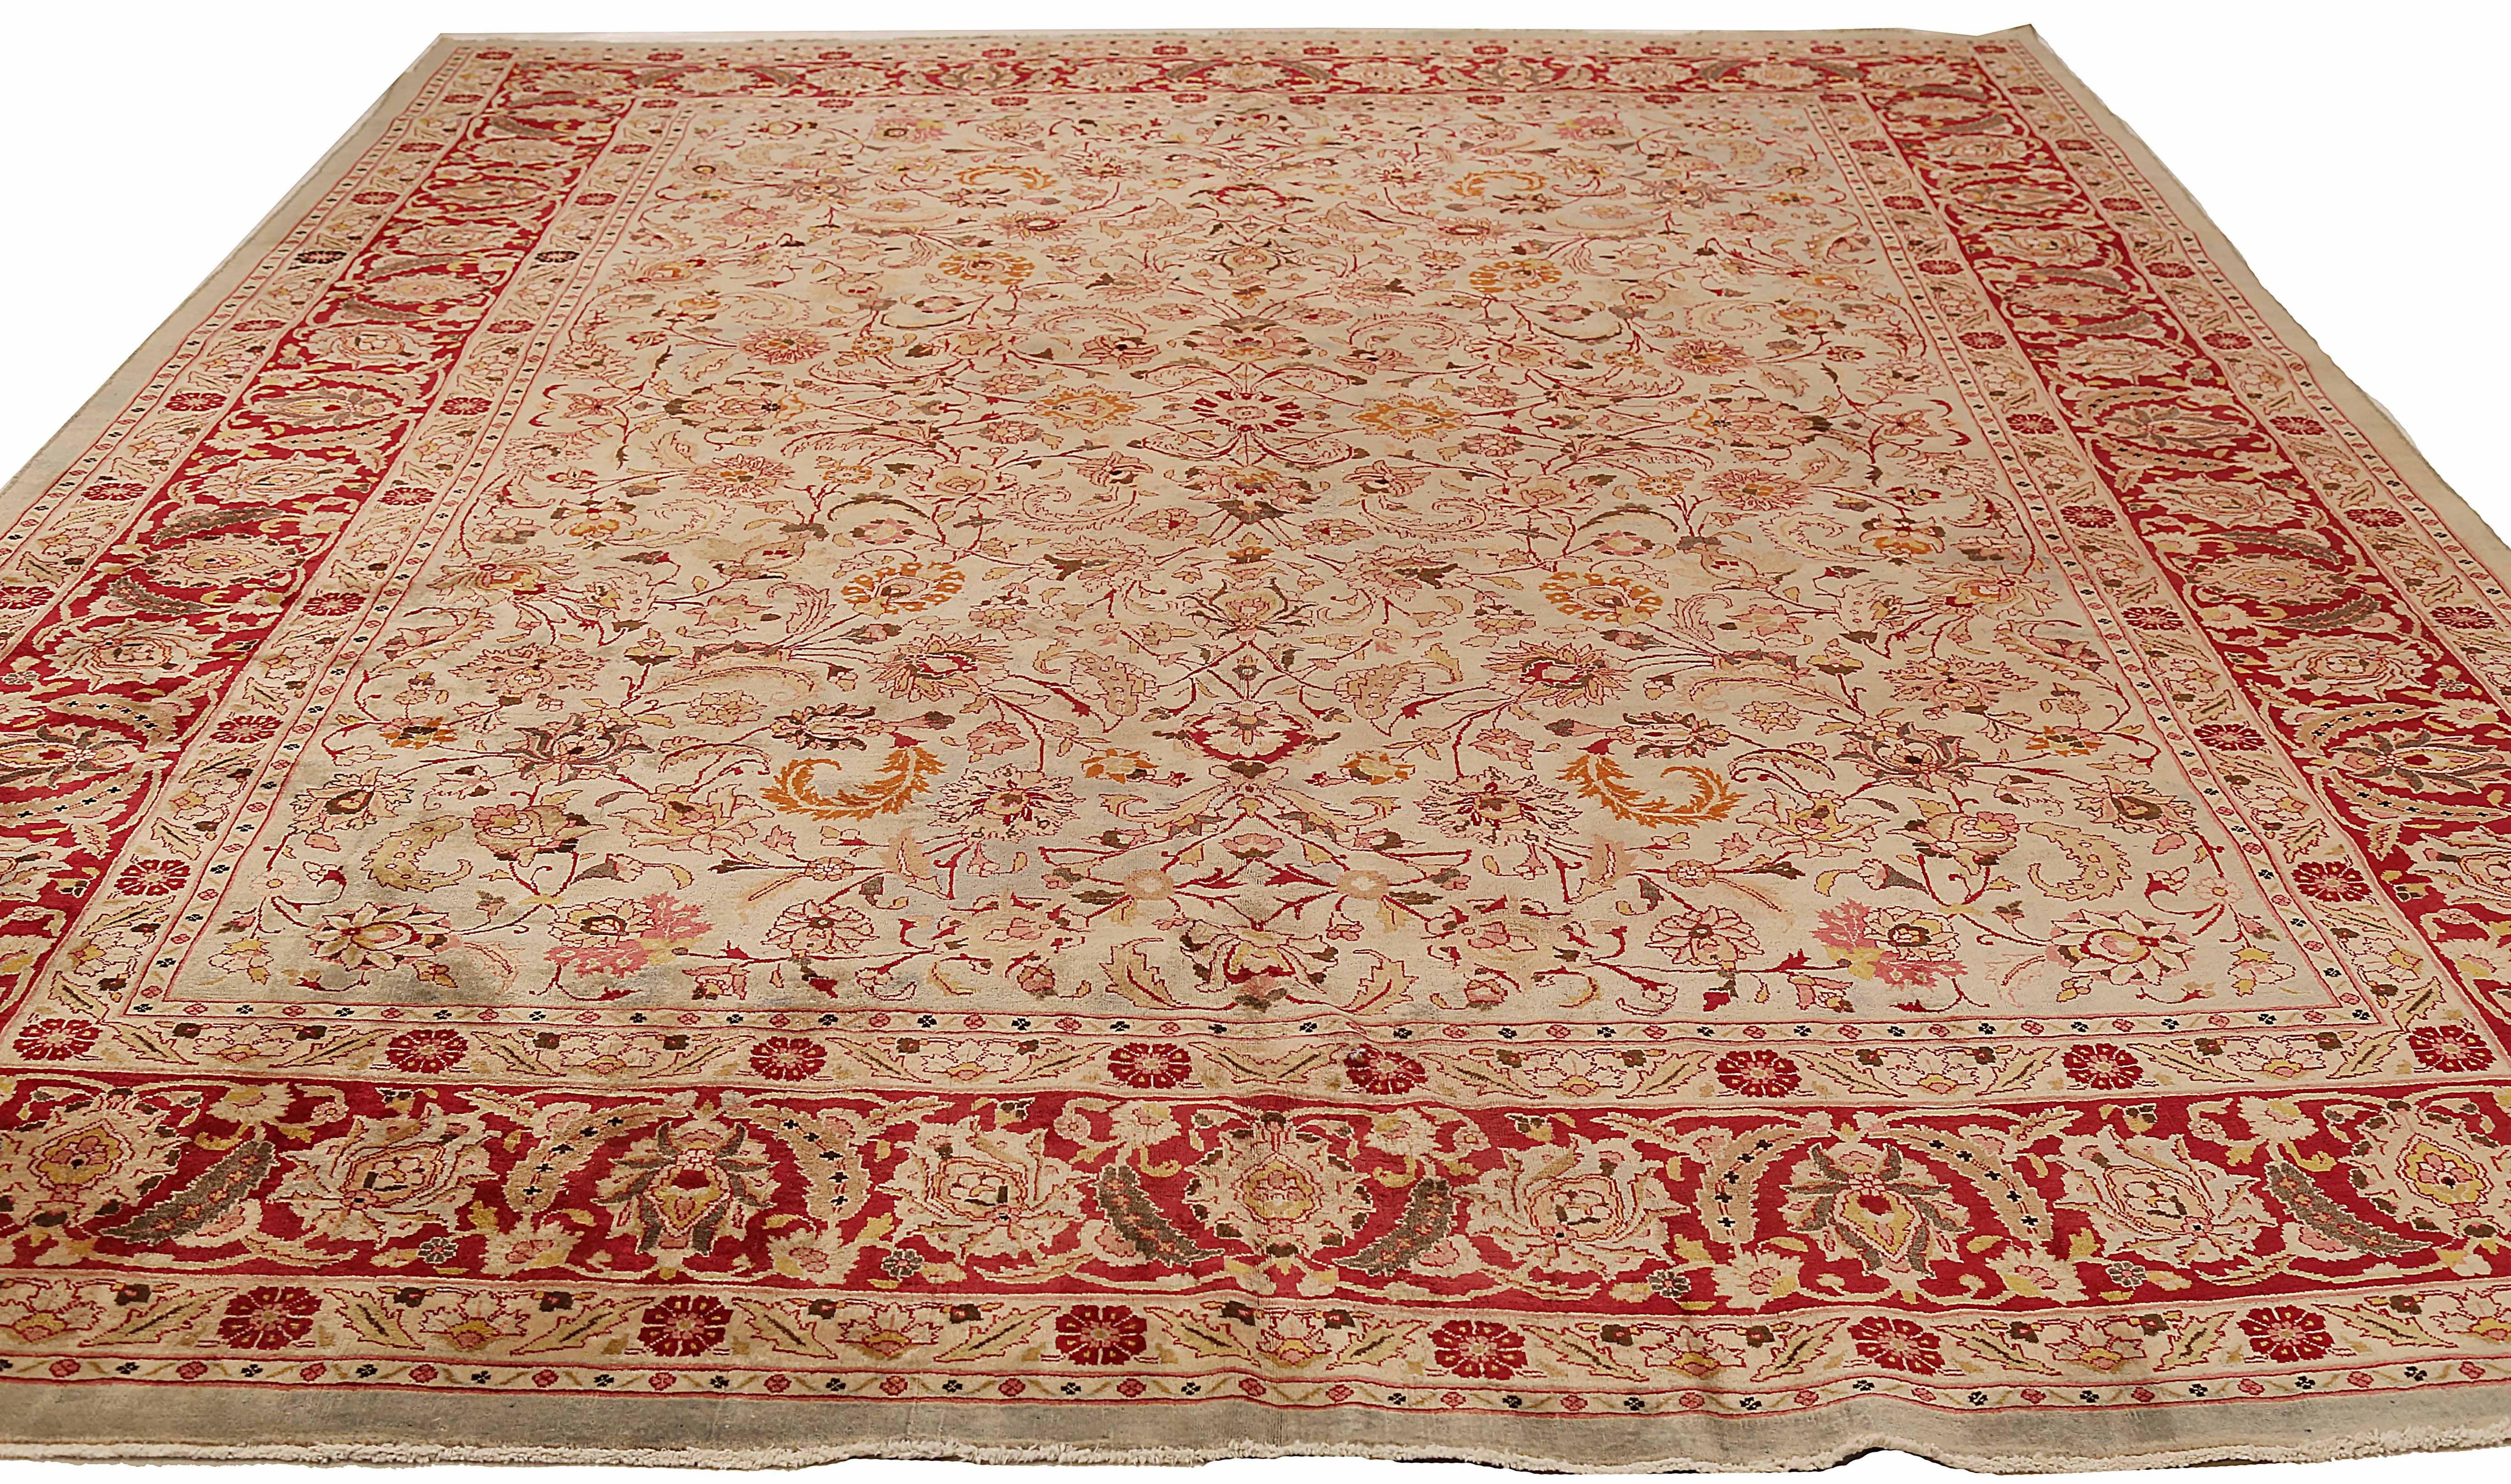 Antiker persischer Teppich, handgewebt aus feinster Schafswolle. Es ist mit natürlichen pflanzlichen Farbstoffen gefärbt, die für Menschen und Haustiere sicher sind. Es handelt sich um ein traditionelles Mashad-Design, das von erfahrenen